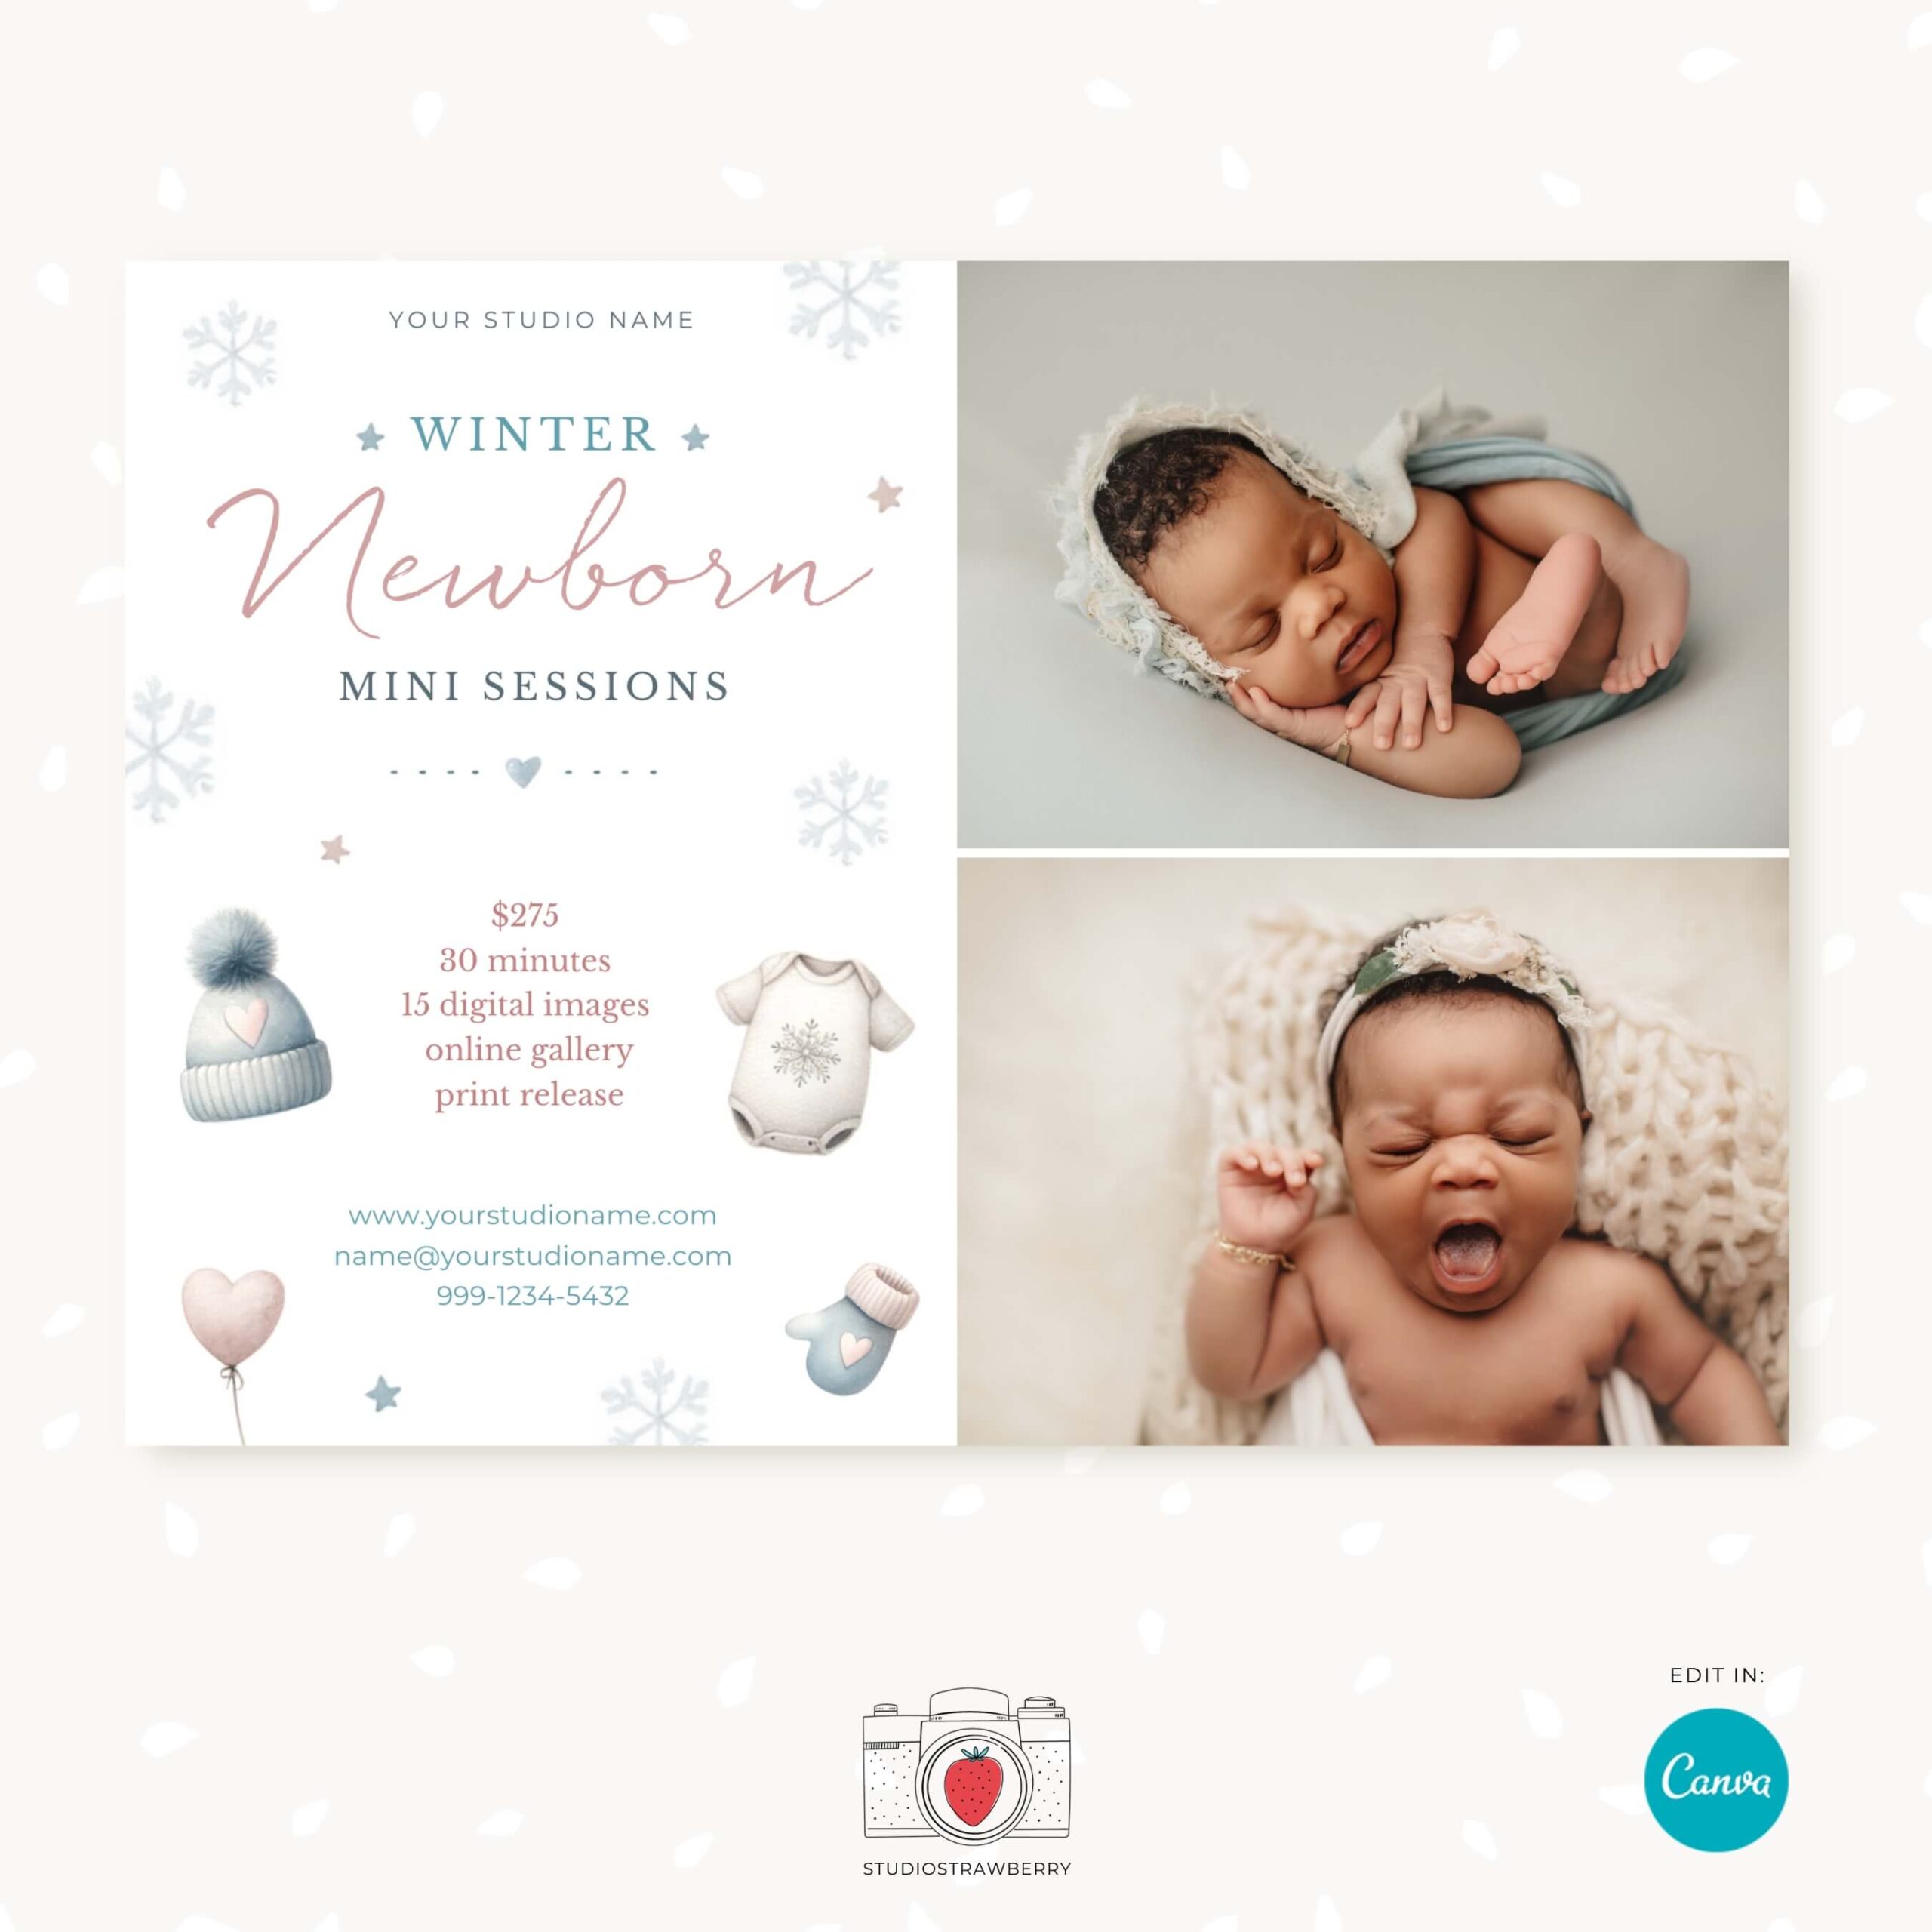 Winter Newborn Mini Sessions Marketing Template